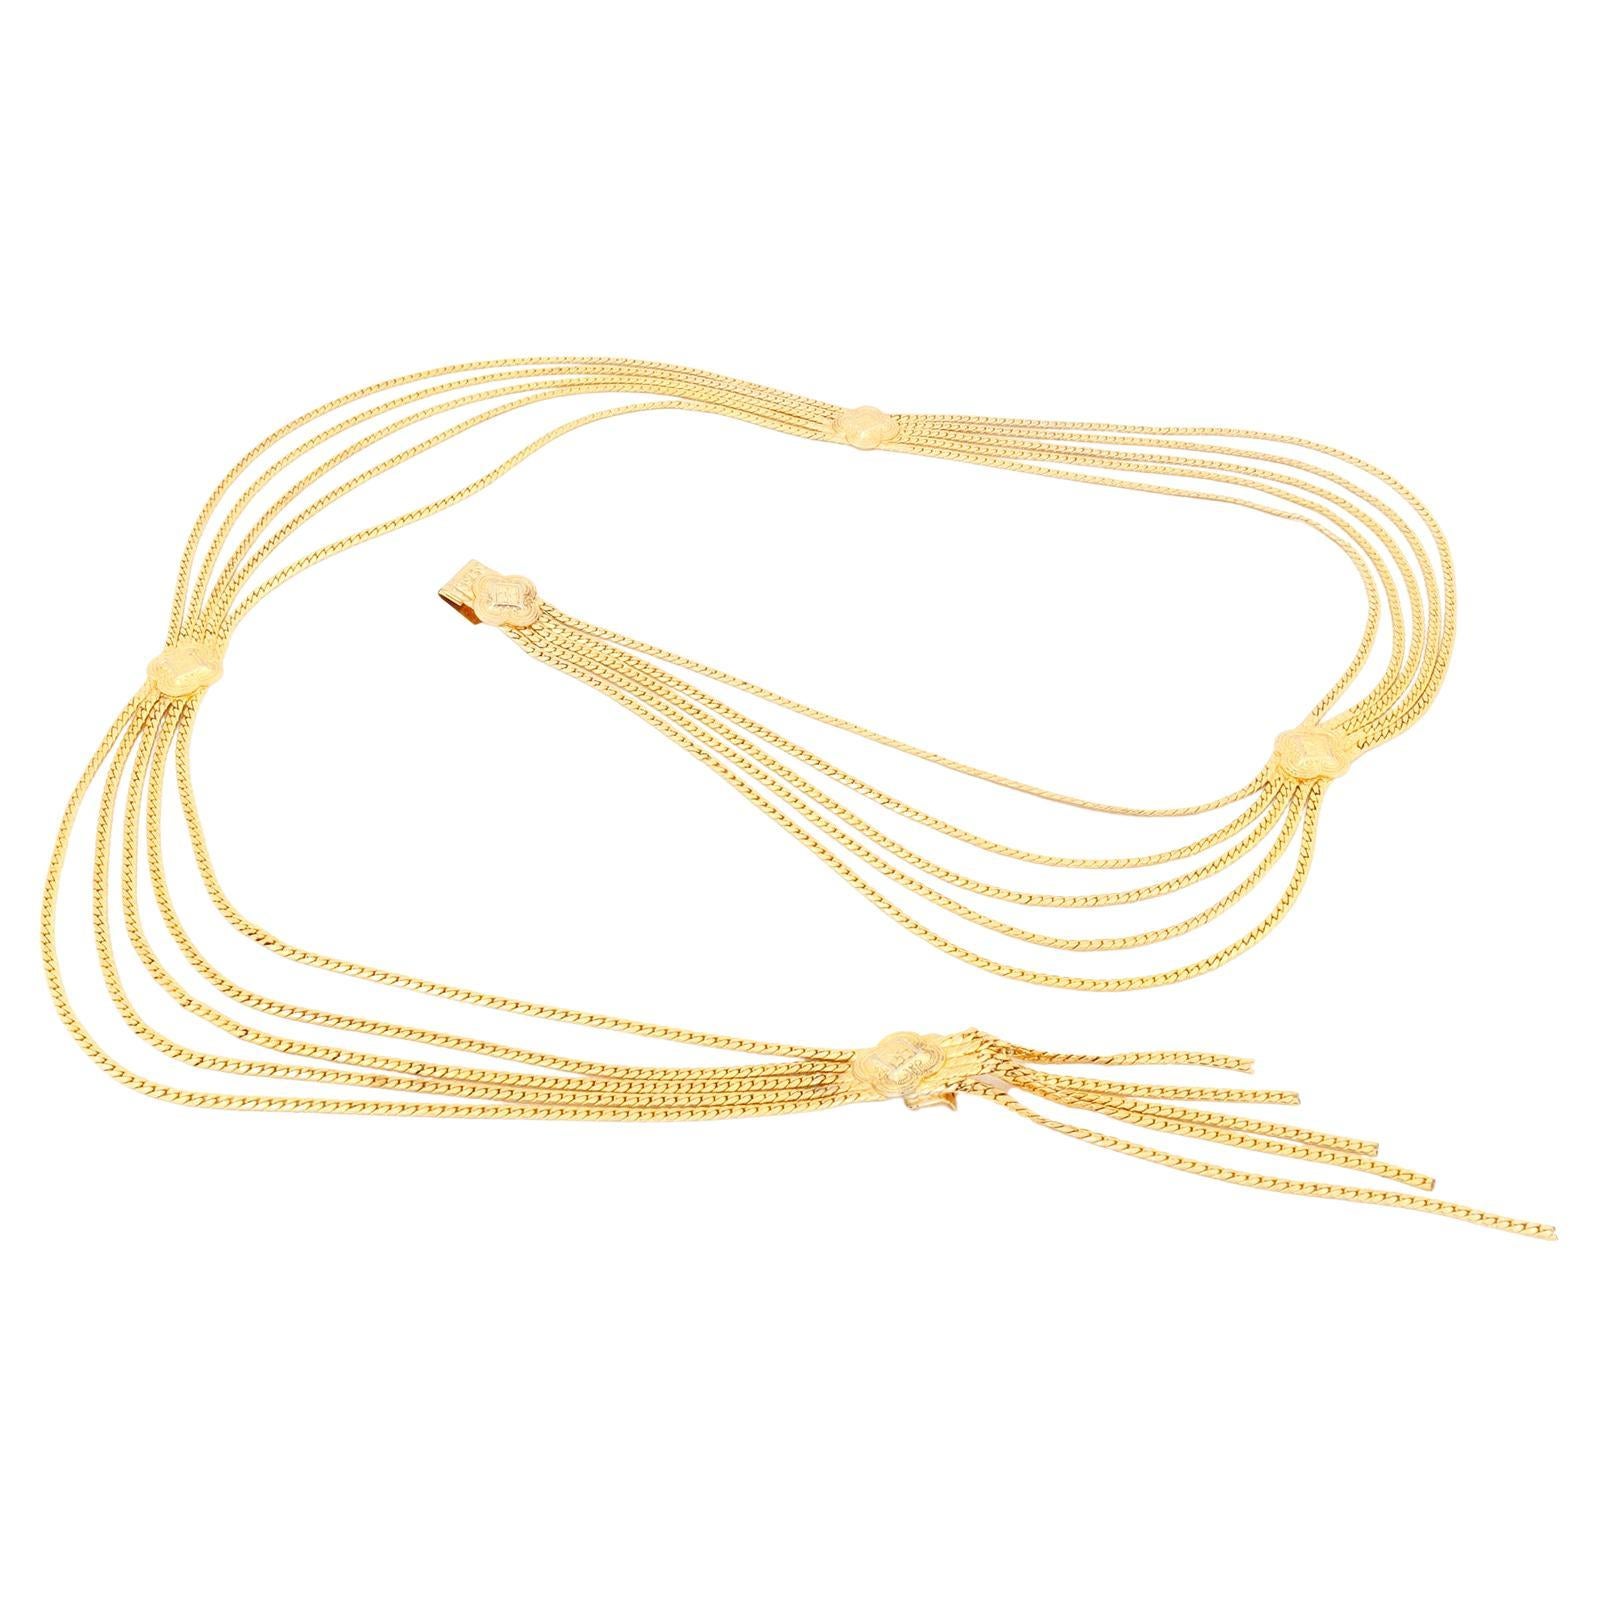 Vintage Christian Dior Multi Strand Gold Medallion Belt or Necklace